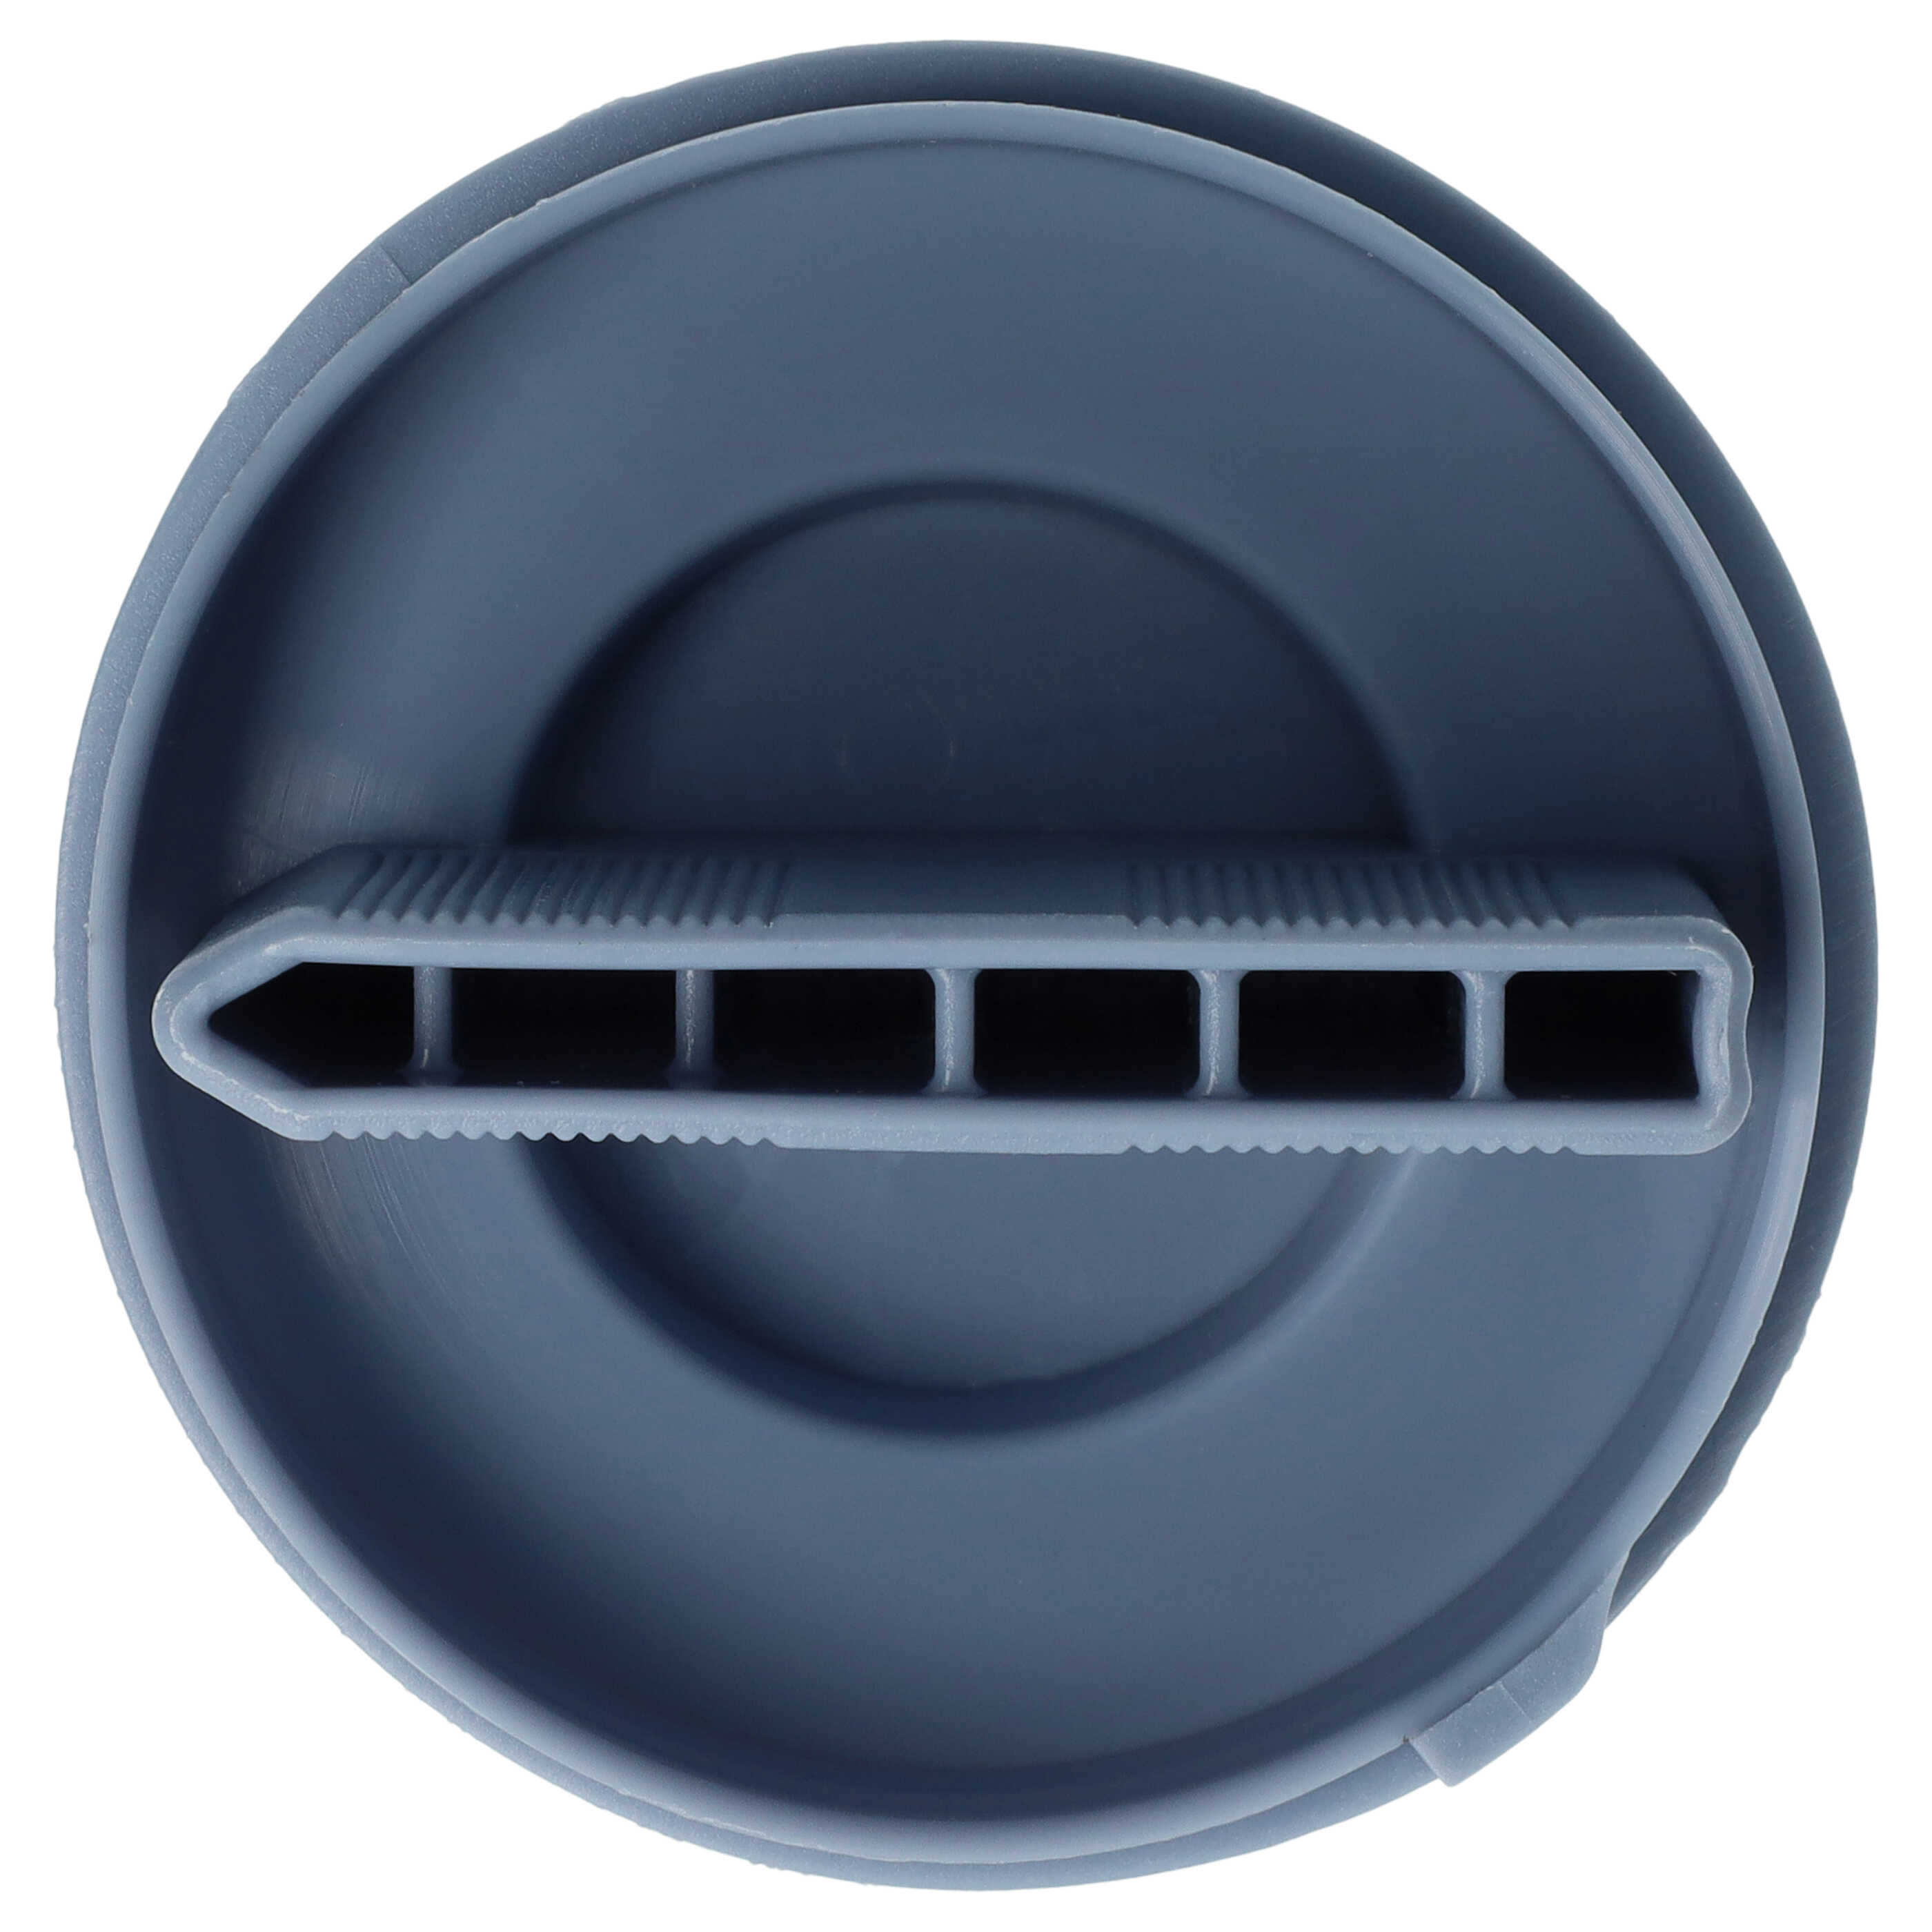 Filtr pompy odpływowej do pralki suszarki zamiennik Bosch 10000845, 00647920, 00605010, 00602008